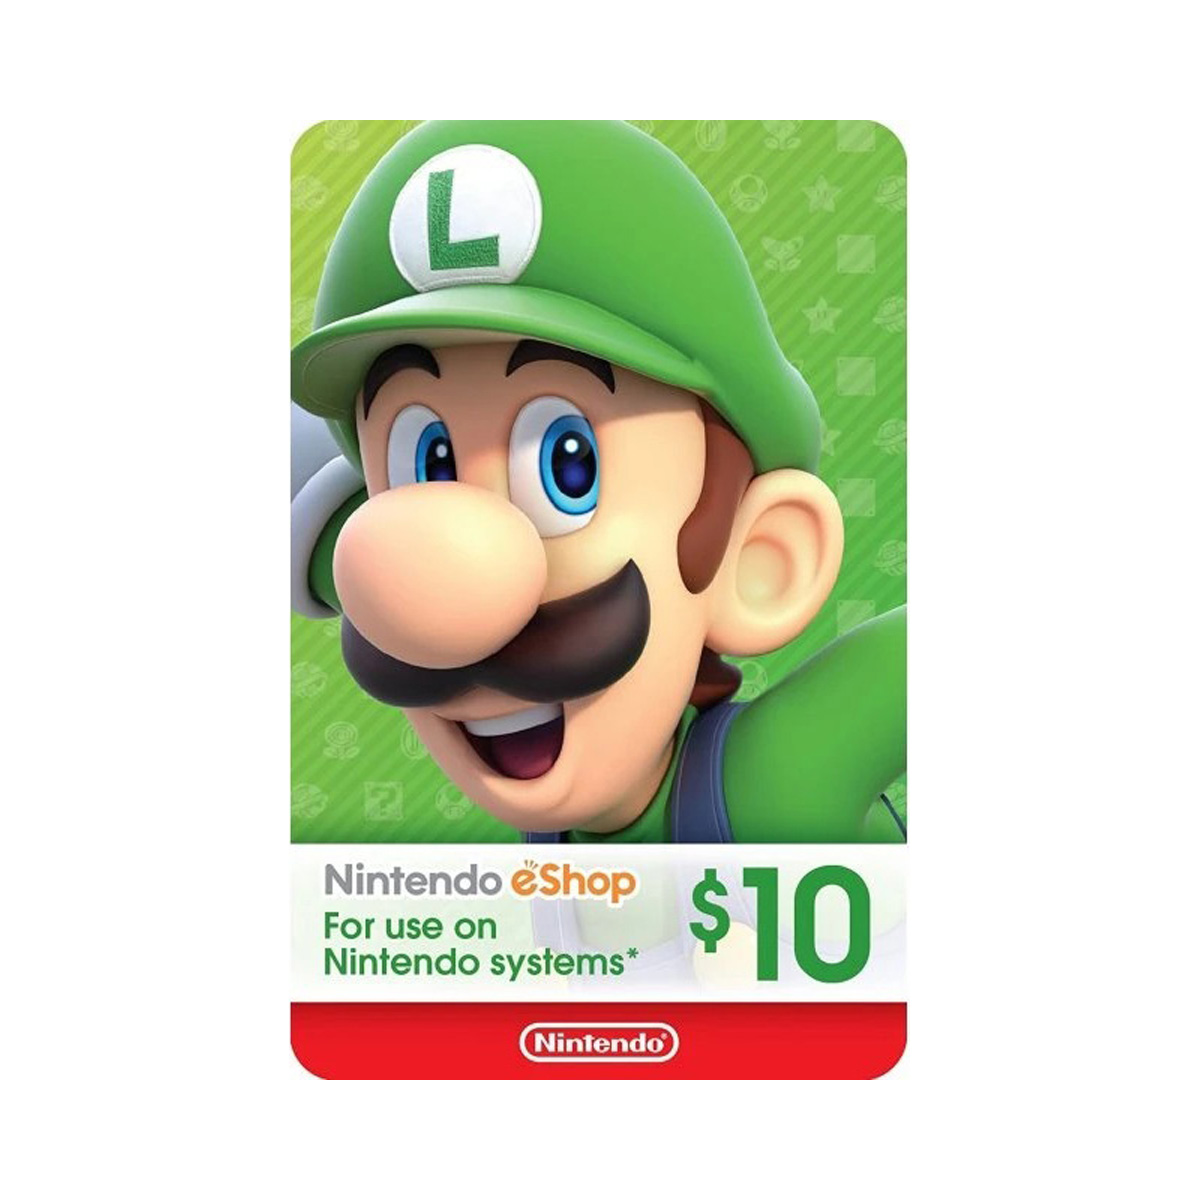 Nintendo - Nintendo e-Shop Card : US $10.00 - Digital Code Only